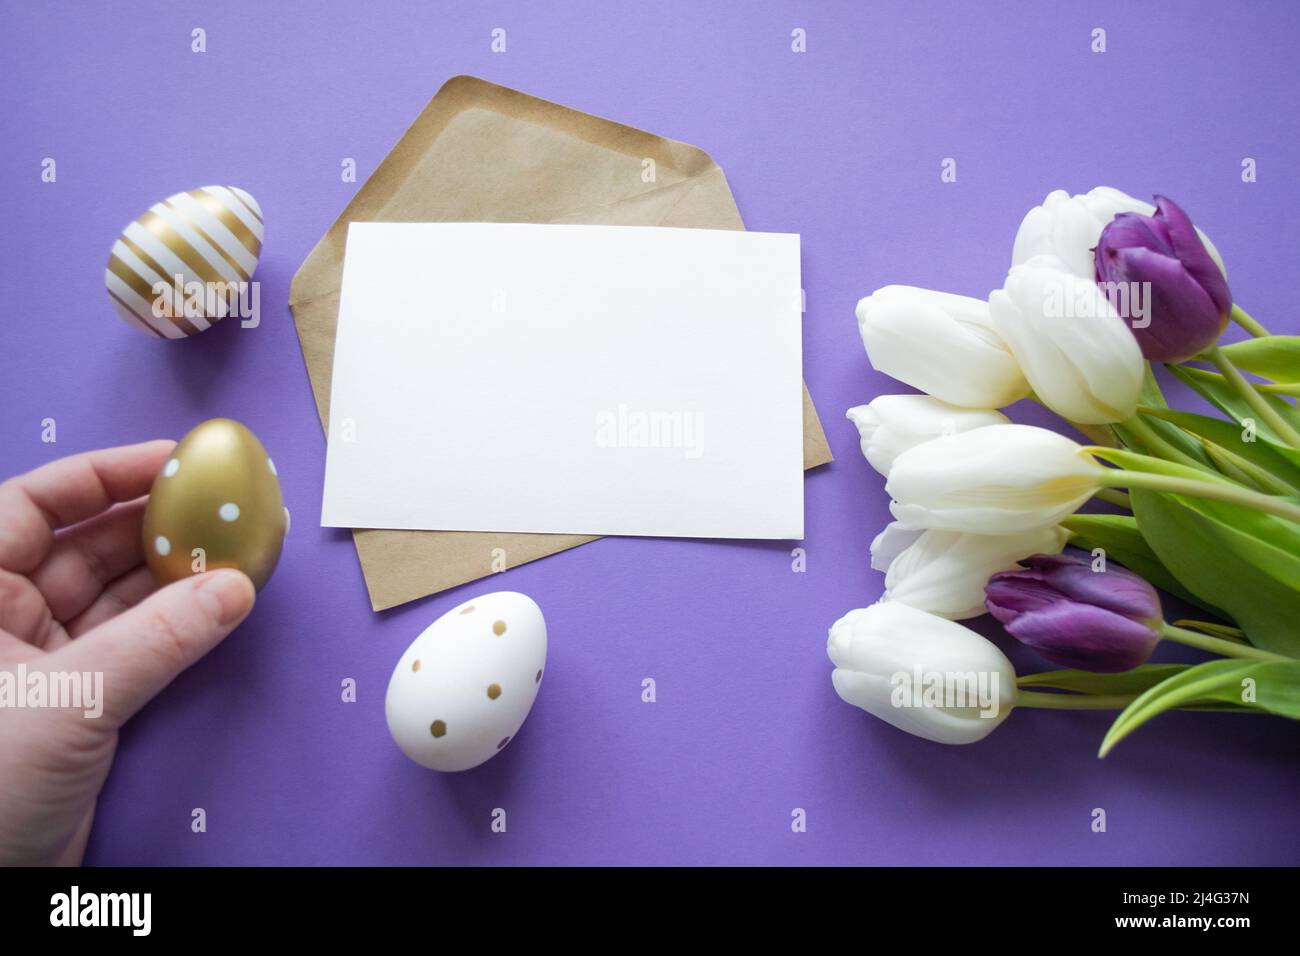 Vœux de Pâques : oeufs colorés, tulipes blanches. Lettre avec espace de copie, fond violet. La main contient l'œuf de Pâques doré. Banque D'Images